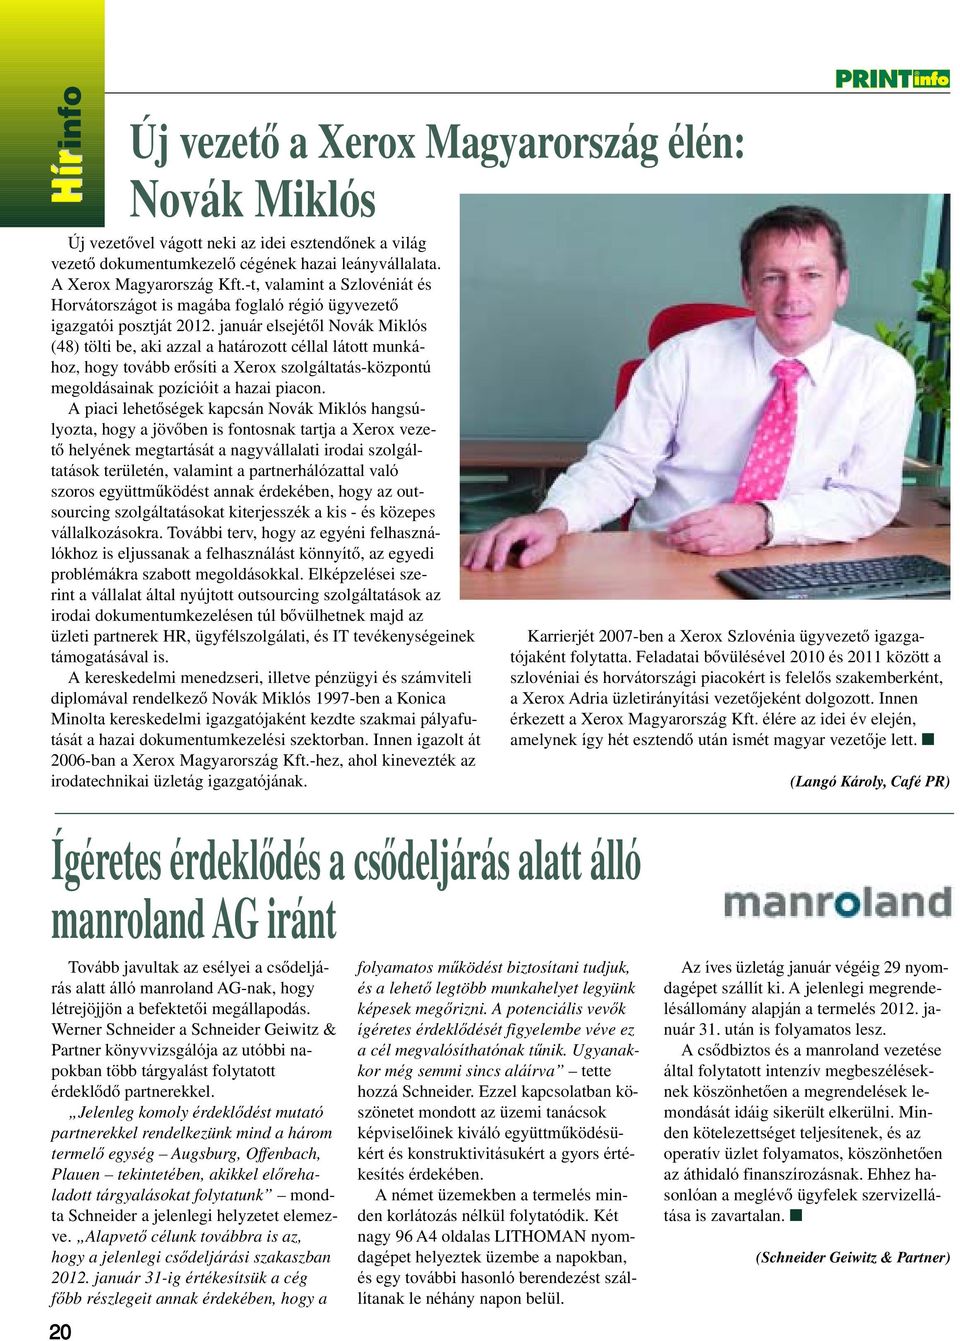 január elsejétôl Novák Miklós (48) tölti be, aki azzal a határozott céllal látott munkához, hogy tovább erôsíti a Xerox szolgáltatás-központú megoldásainak pozícióit a hazai piacon.